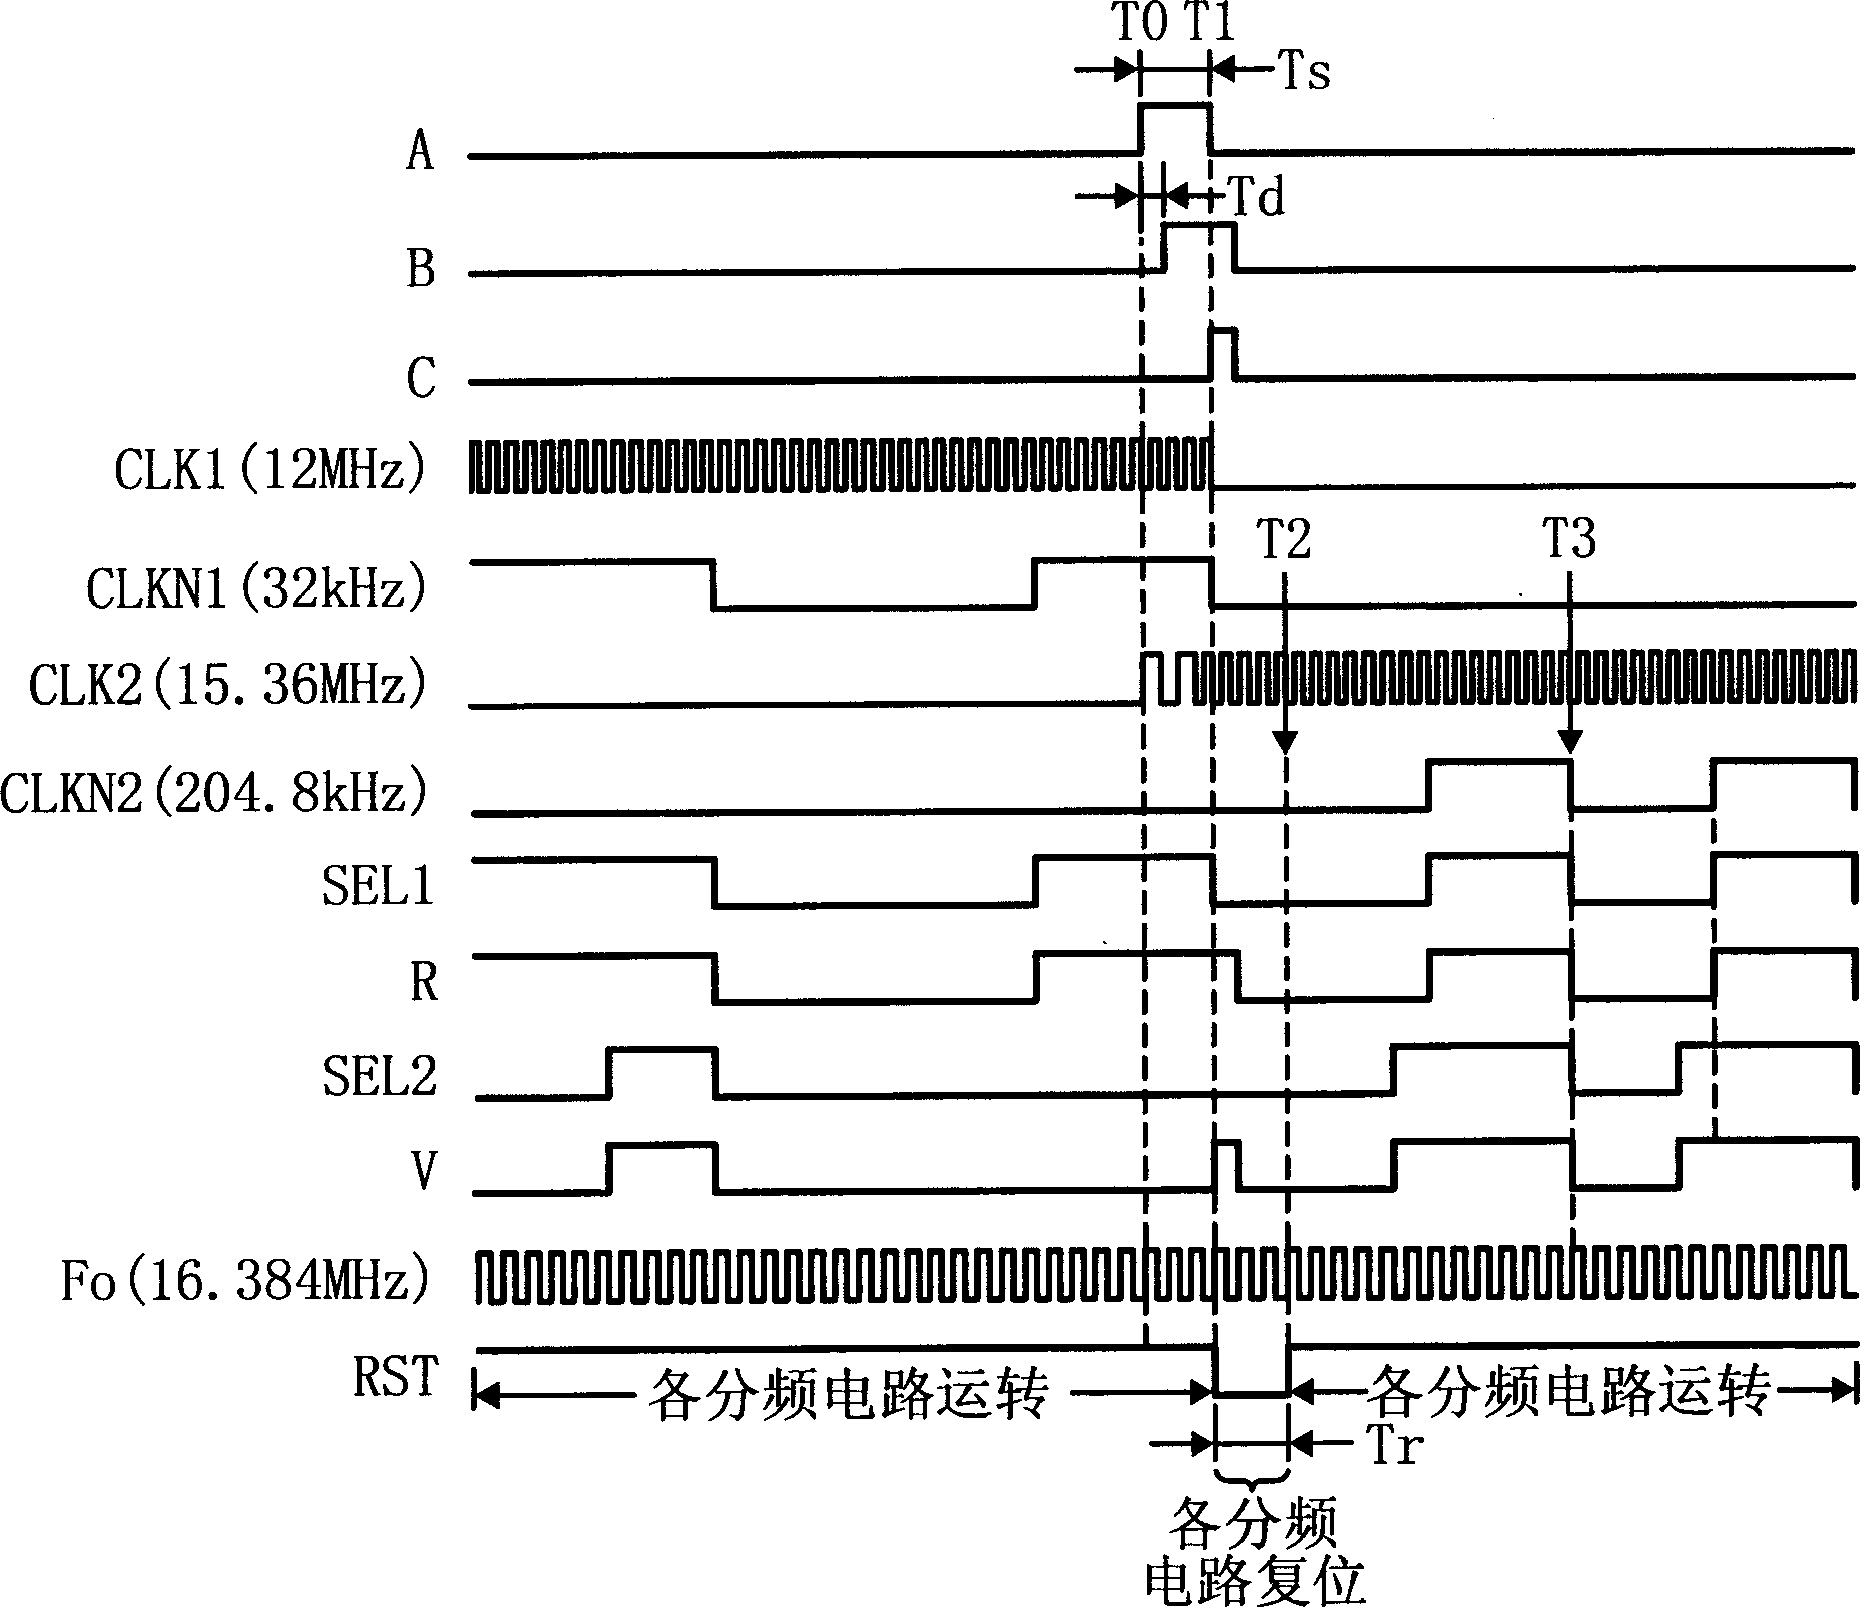 Clock pulse generating circuit